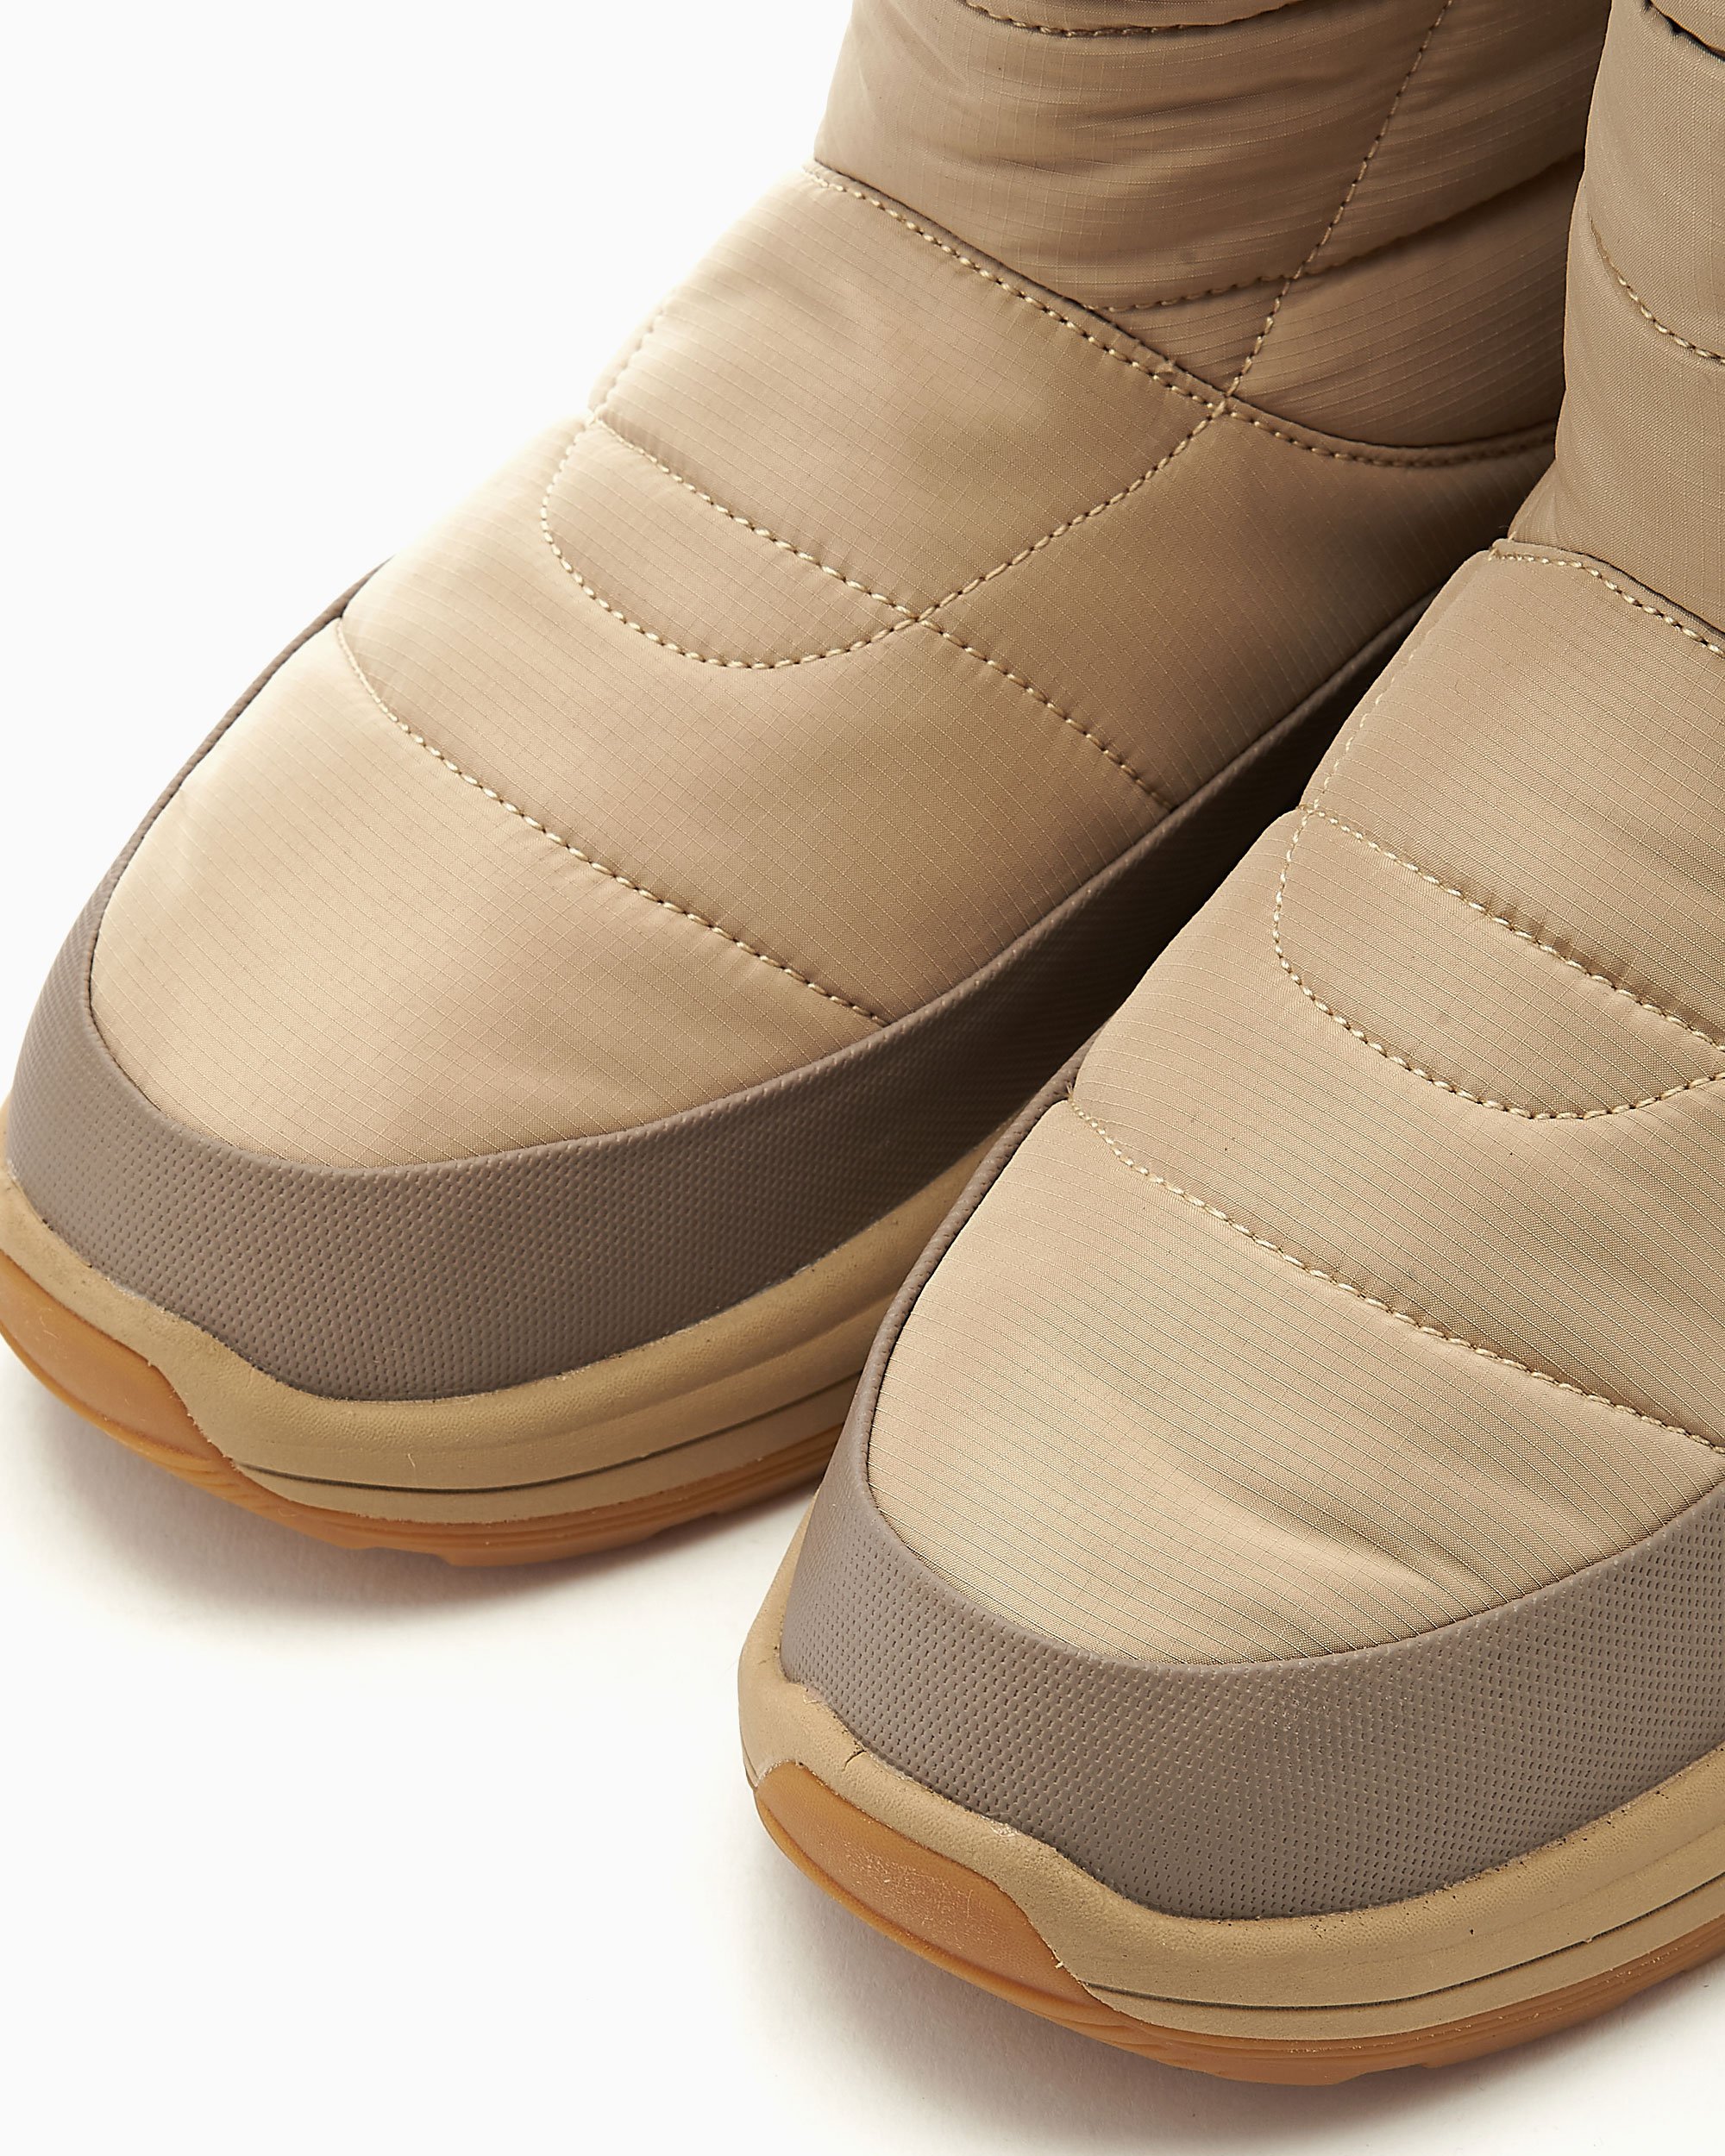 Suicoke Bower Evab Ankle-Boots Beige OG-222evab-BGE| FOOTDISTRICT